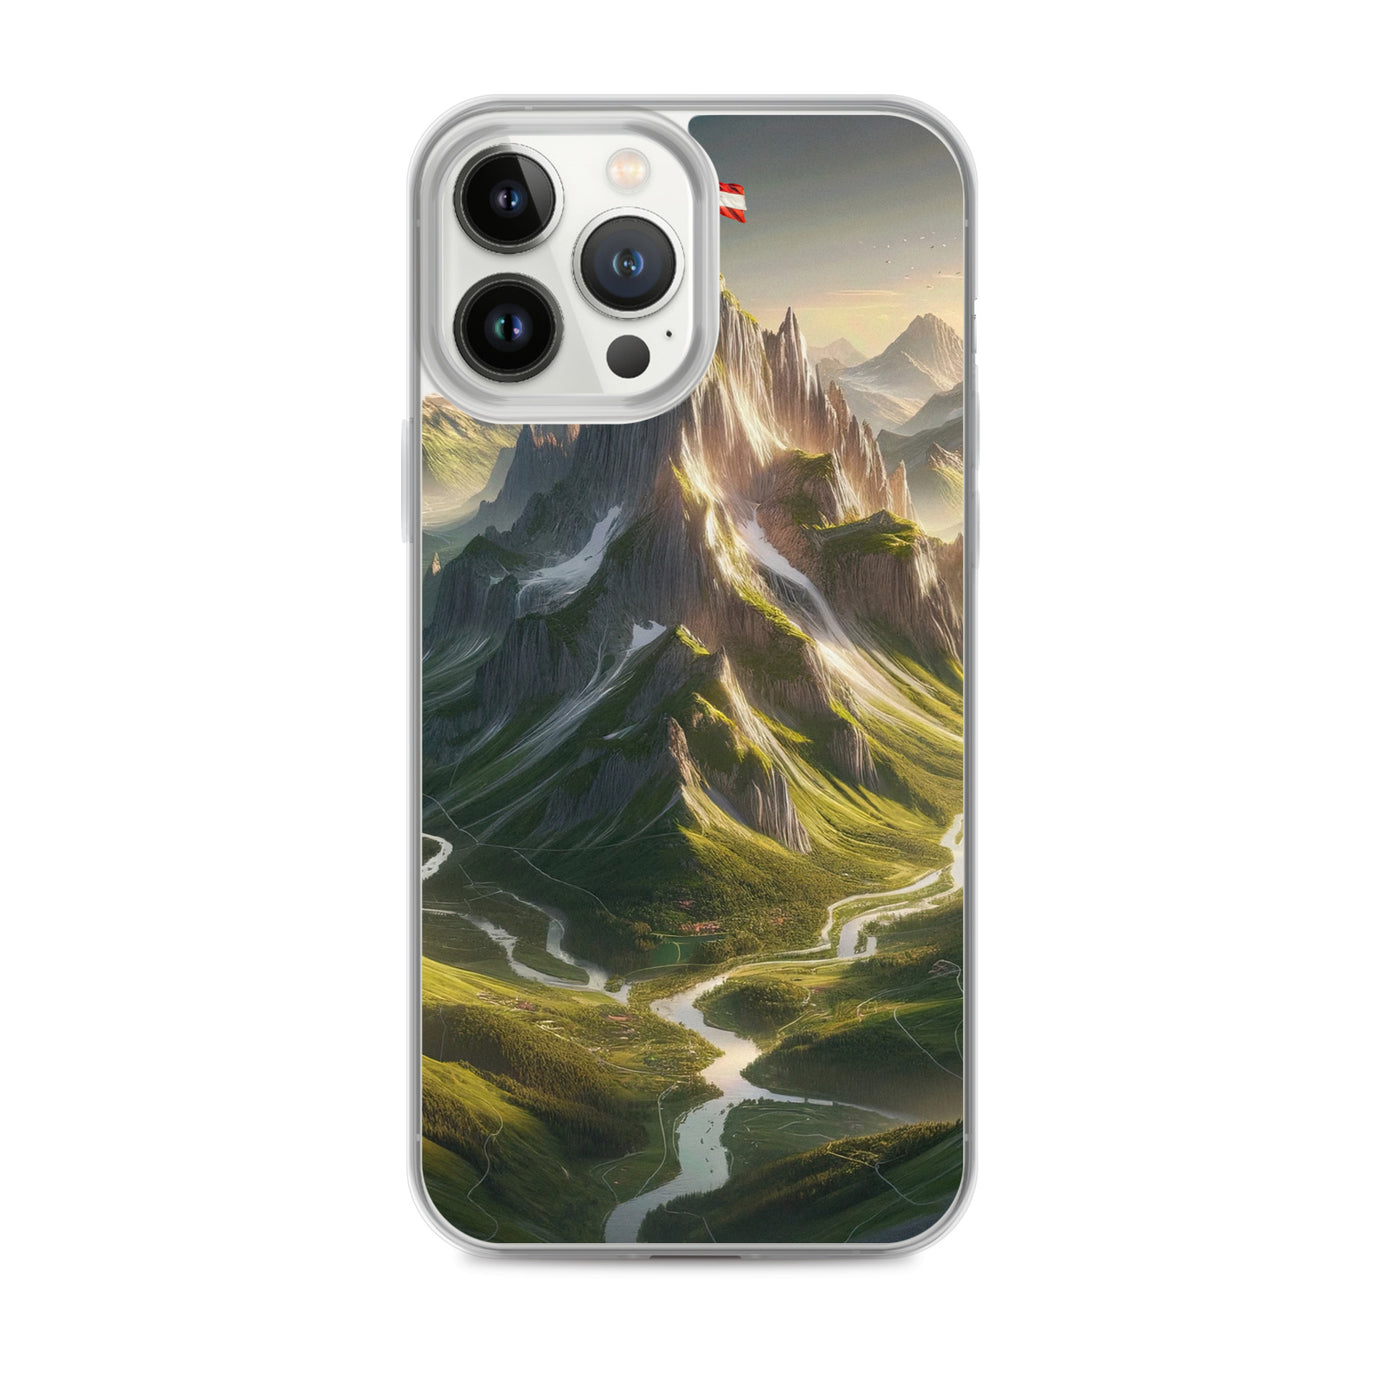 Fotorealistisches Bild der Alpen mit österreichischer Flagge, scharfen Gipfeln und grünen Tälern - iPhone Schutzhülle (durchsichtig) berge xxx yyy zzz iPhone 13 Pro Max